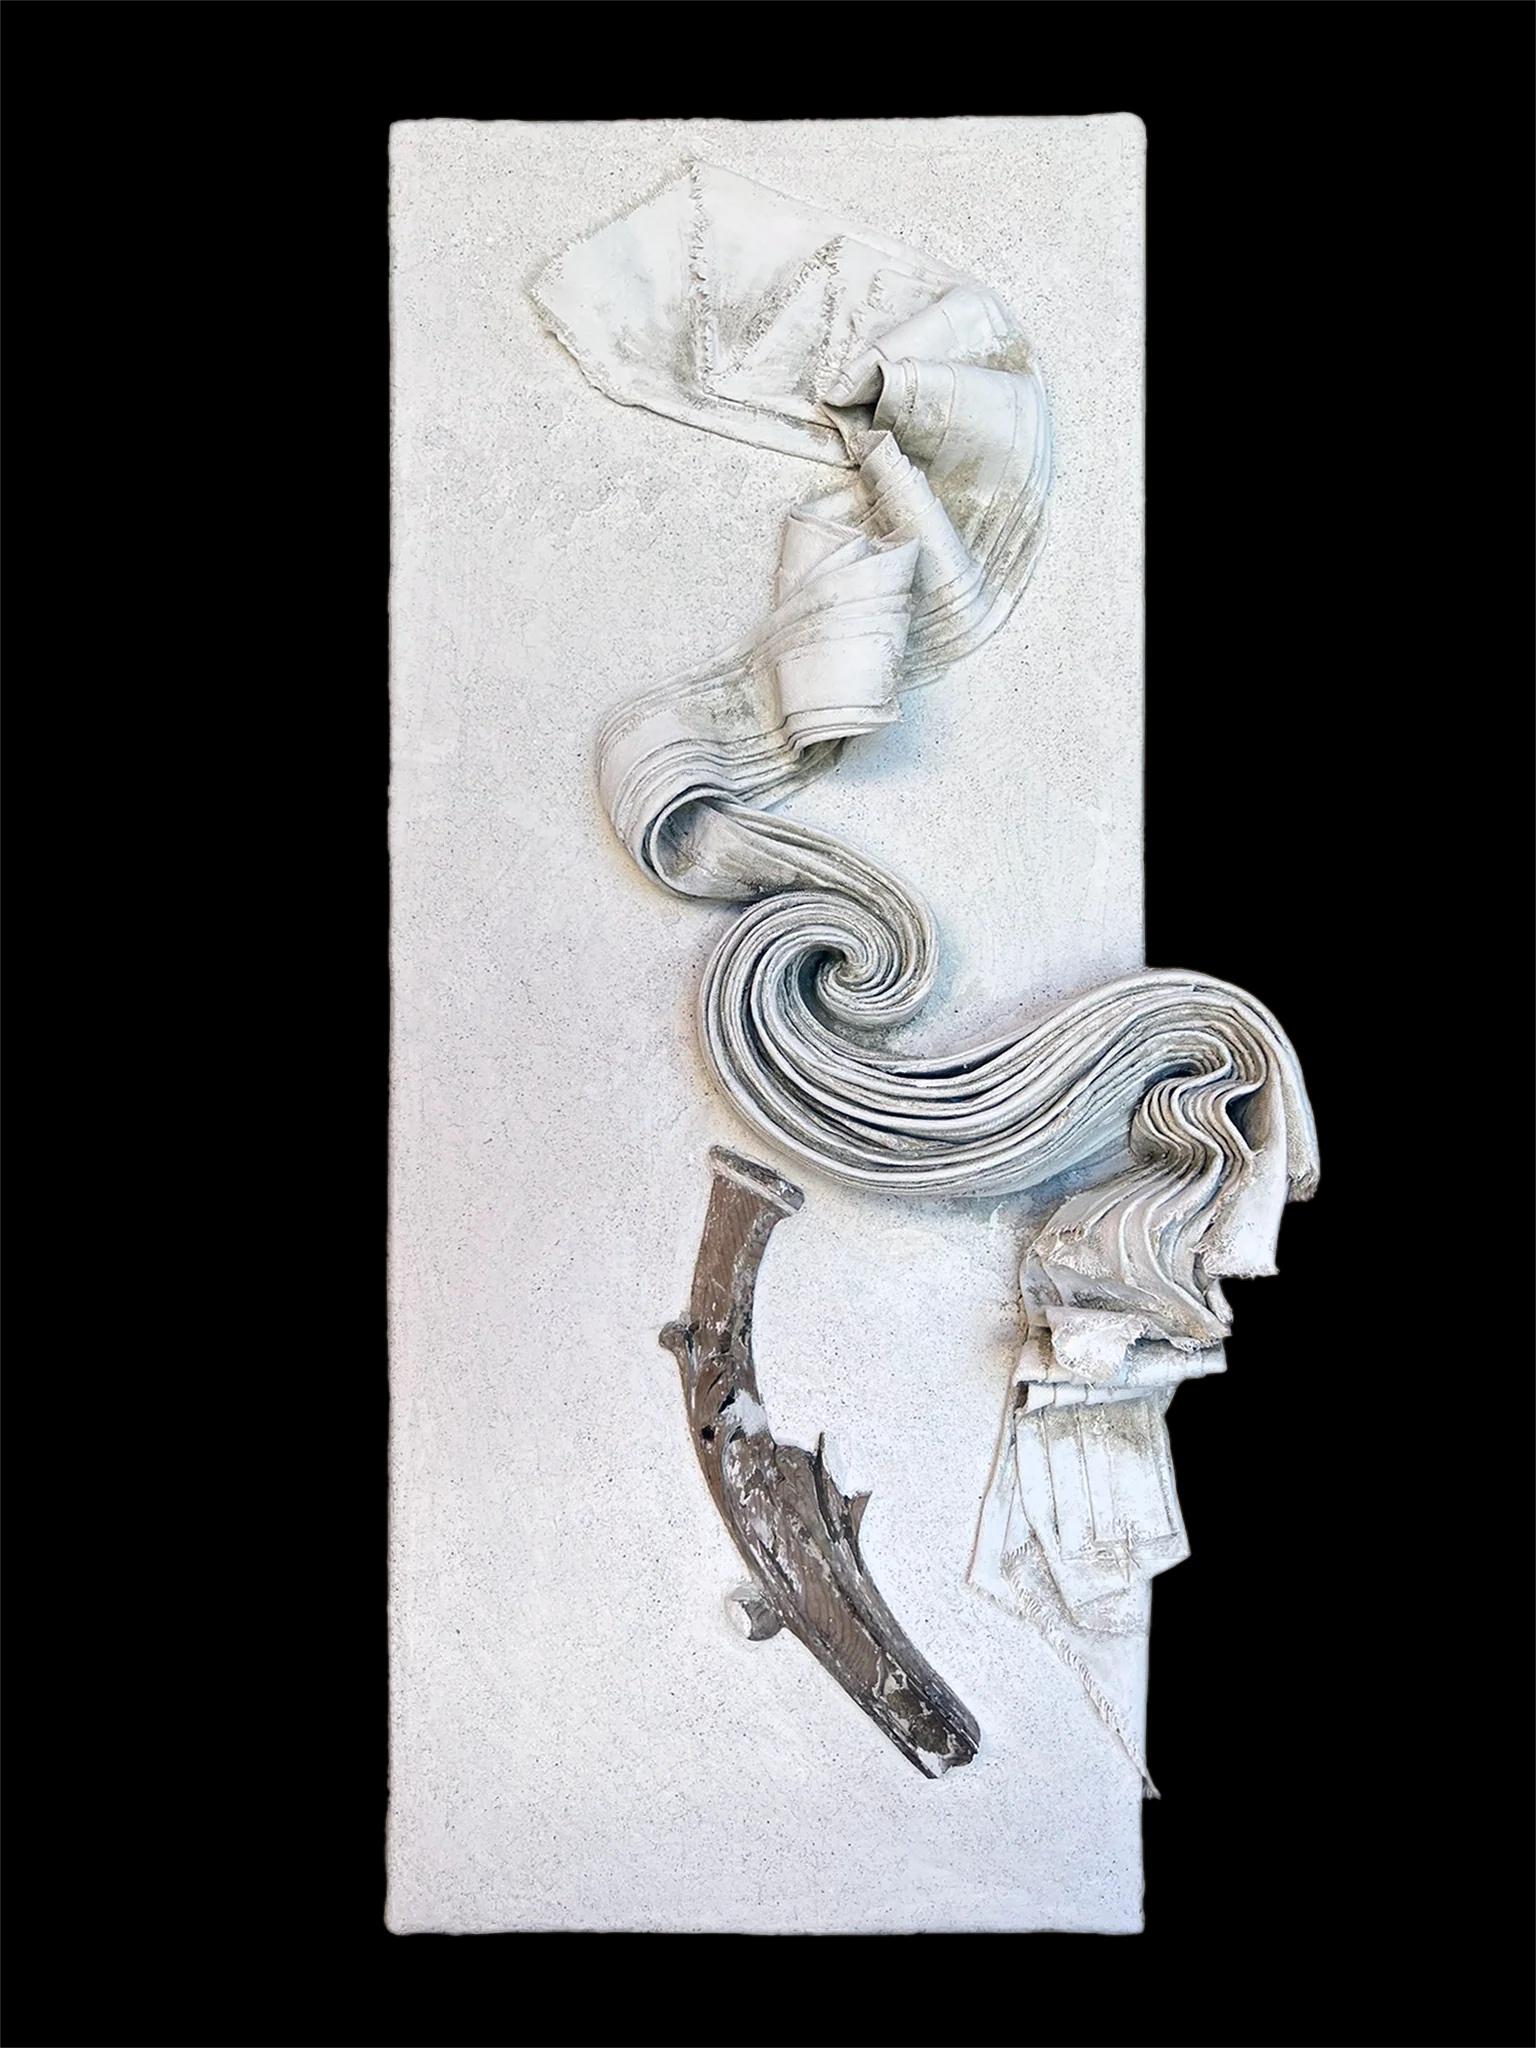 Bildhauerisches Leinwandrelief mit einem Fragment aus dem italienischen Florenz des 17. Jahrhunderts von Elena ROUSSEAU.

Die skulpturale Leinwand ist mit Freskogips, Gesso, Asche, grüner Erde und 24-karätigem Muschelgold auf Karton geformt. Das